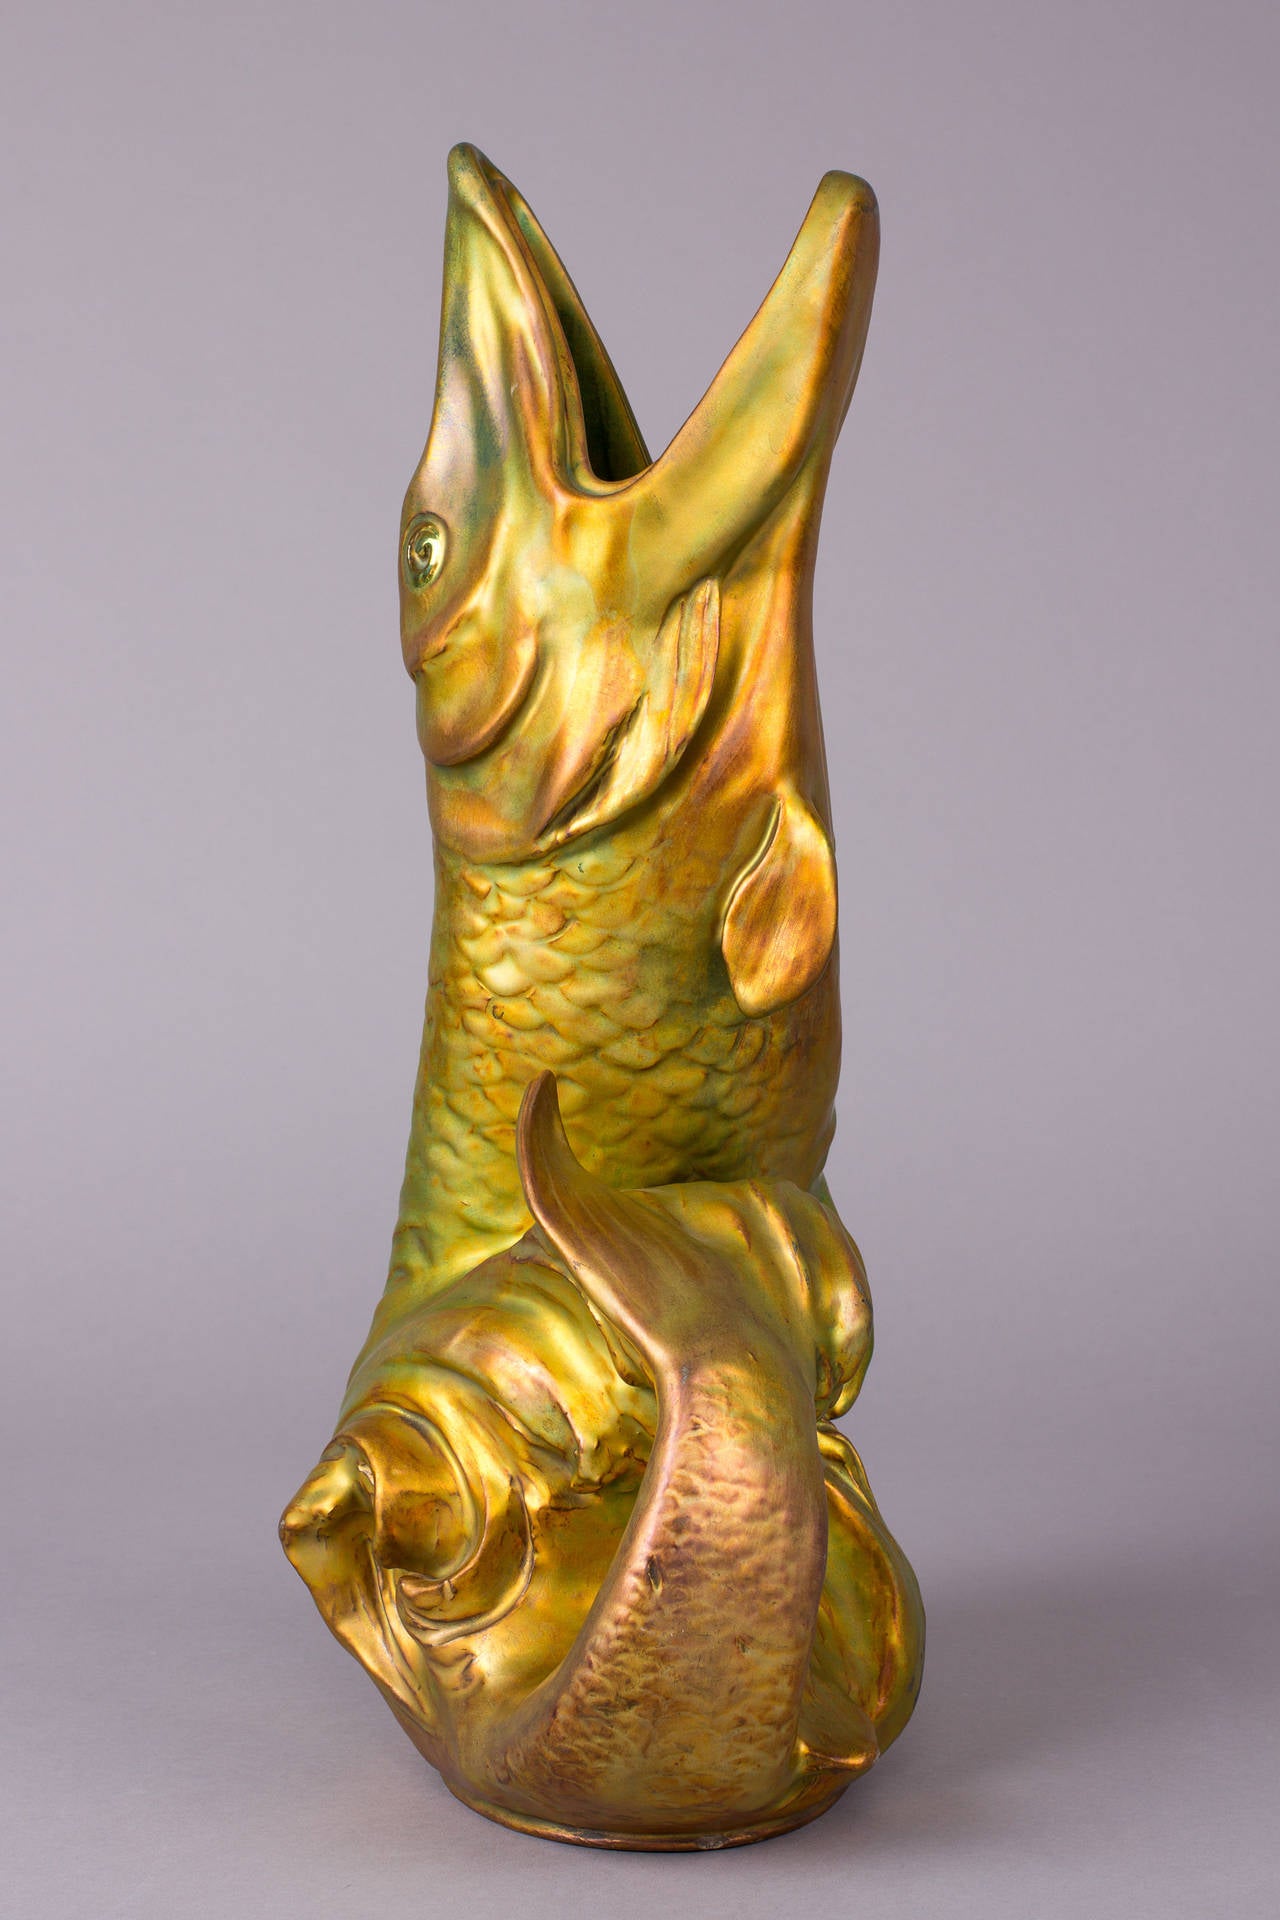 Fish shaped eozine glazed ceramic vase from 1902, by Zsolnay Porcelain Manufactory Pécs, Hungary.

Height: 15.94